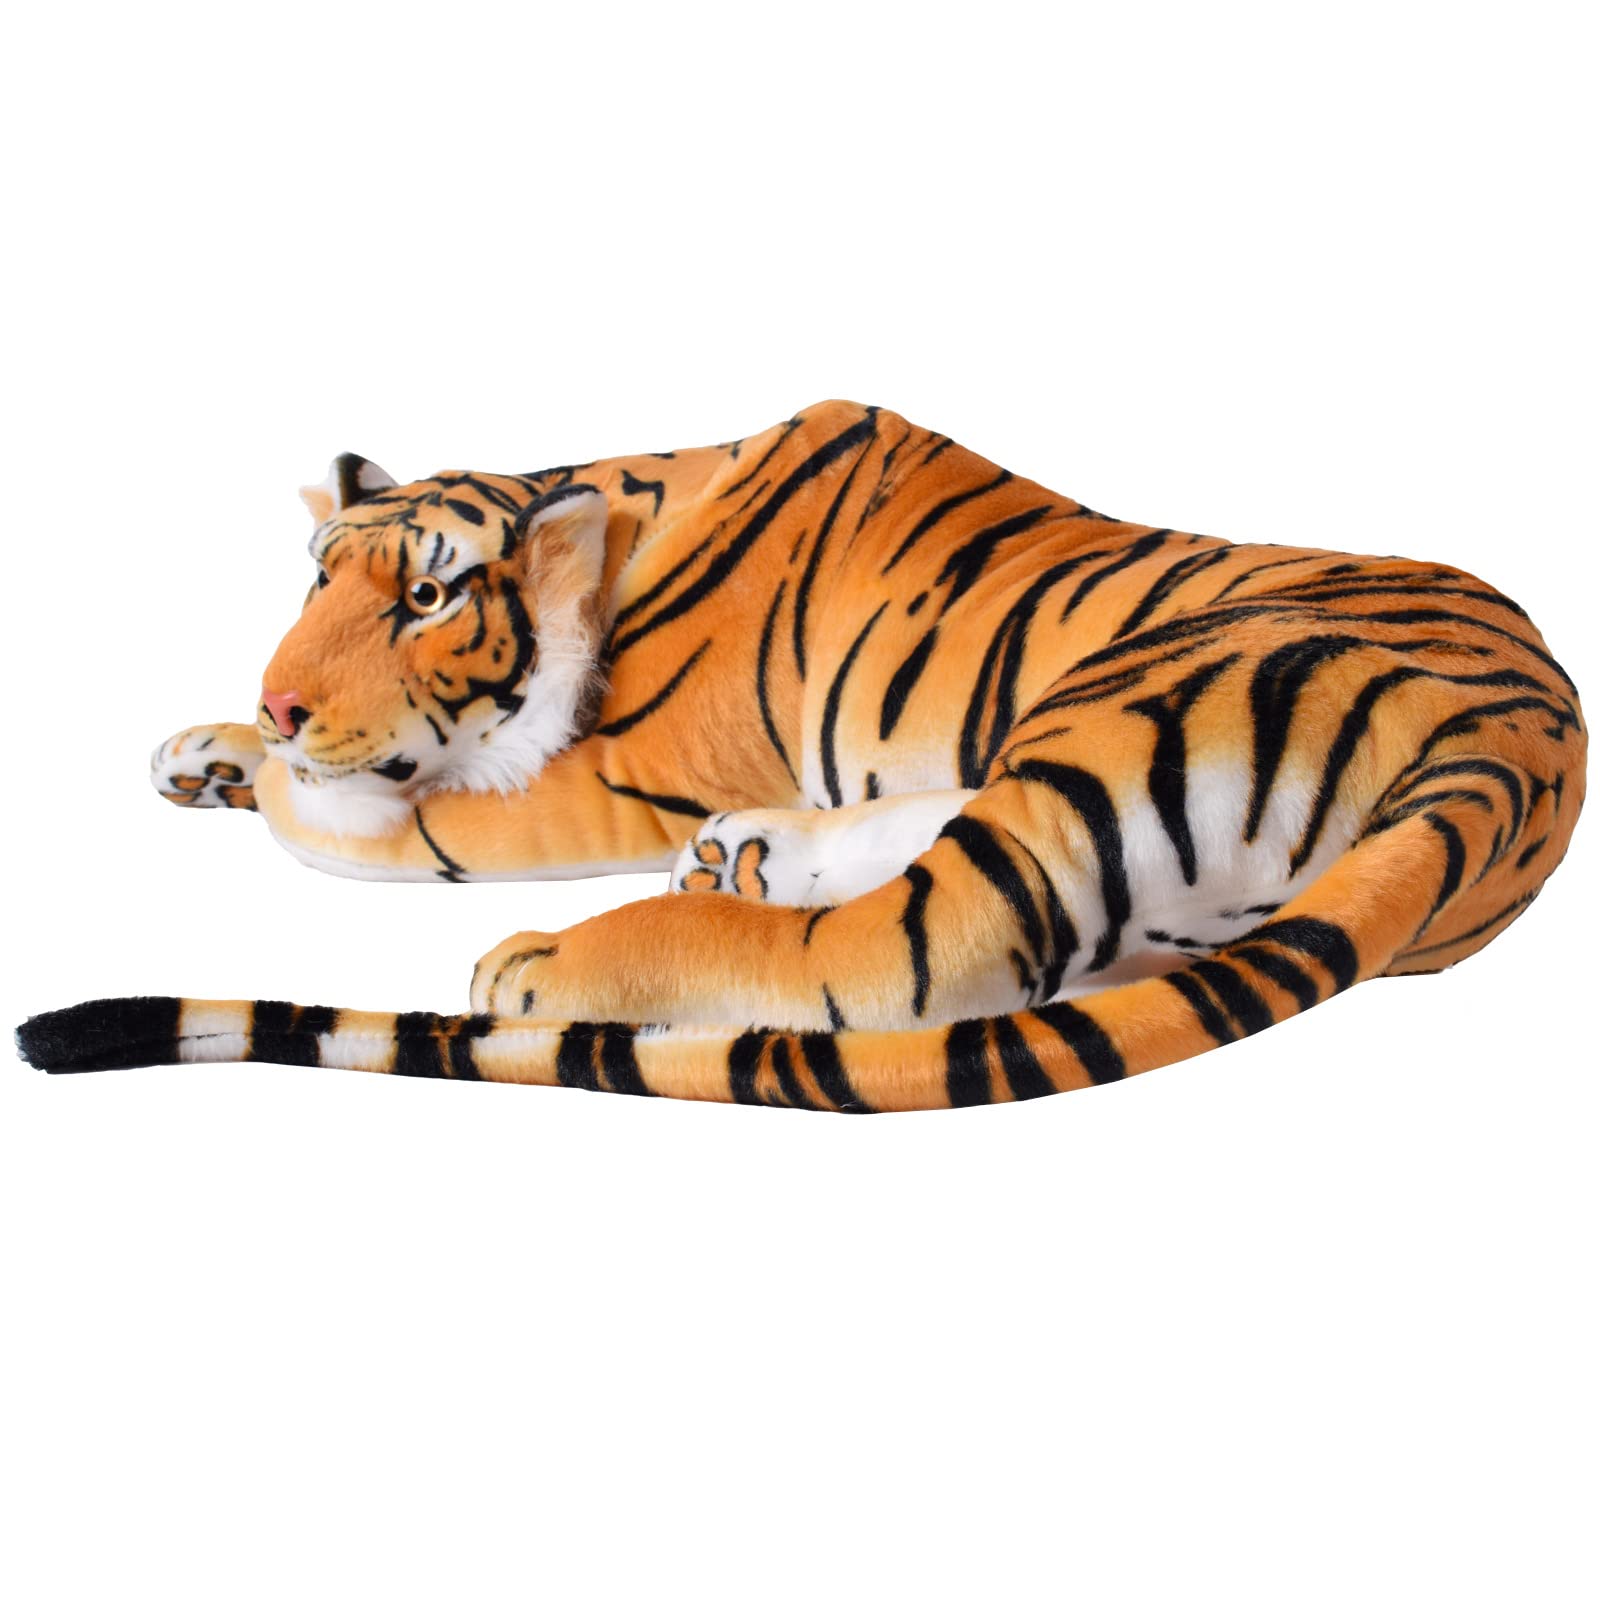 TE-Trend Tiger Kuscheltier XXL, EIN 80cm großes Plüschtier zum Dekorieren und Spielen das mit Seiner liegenden Haltung in Jede Umgebung passt.